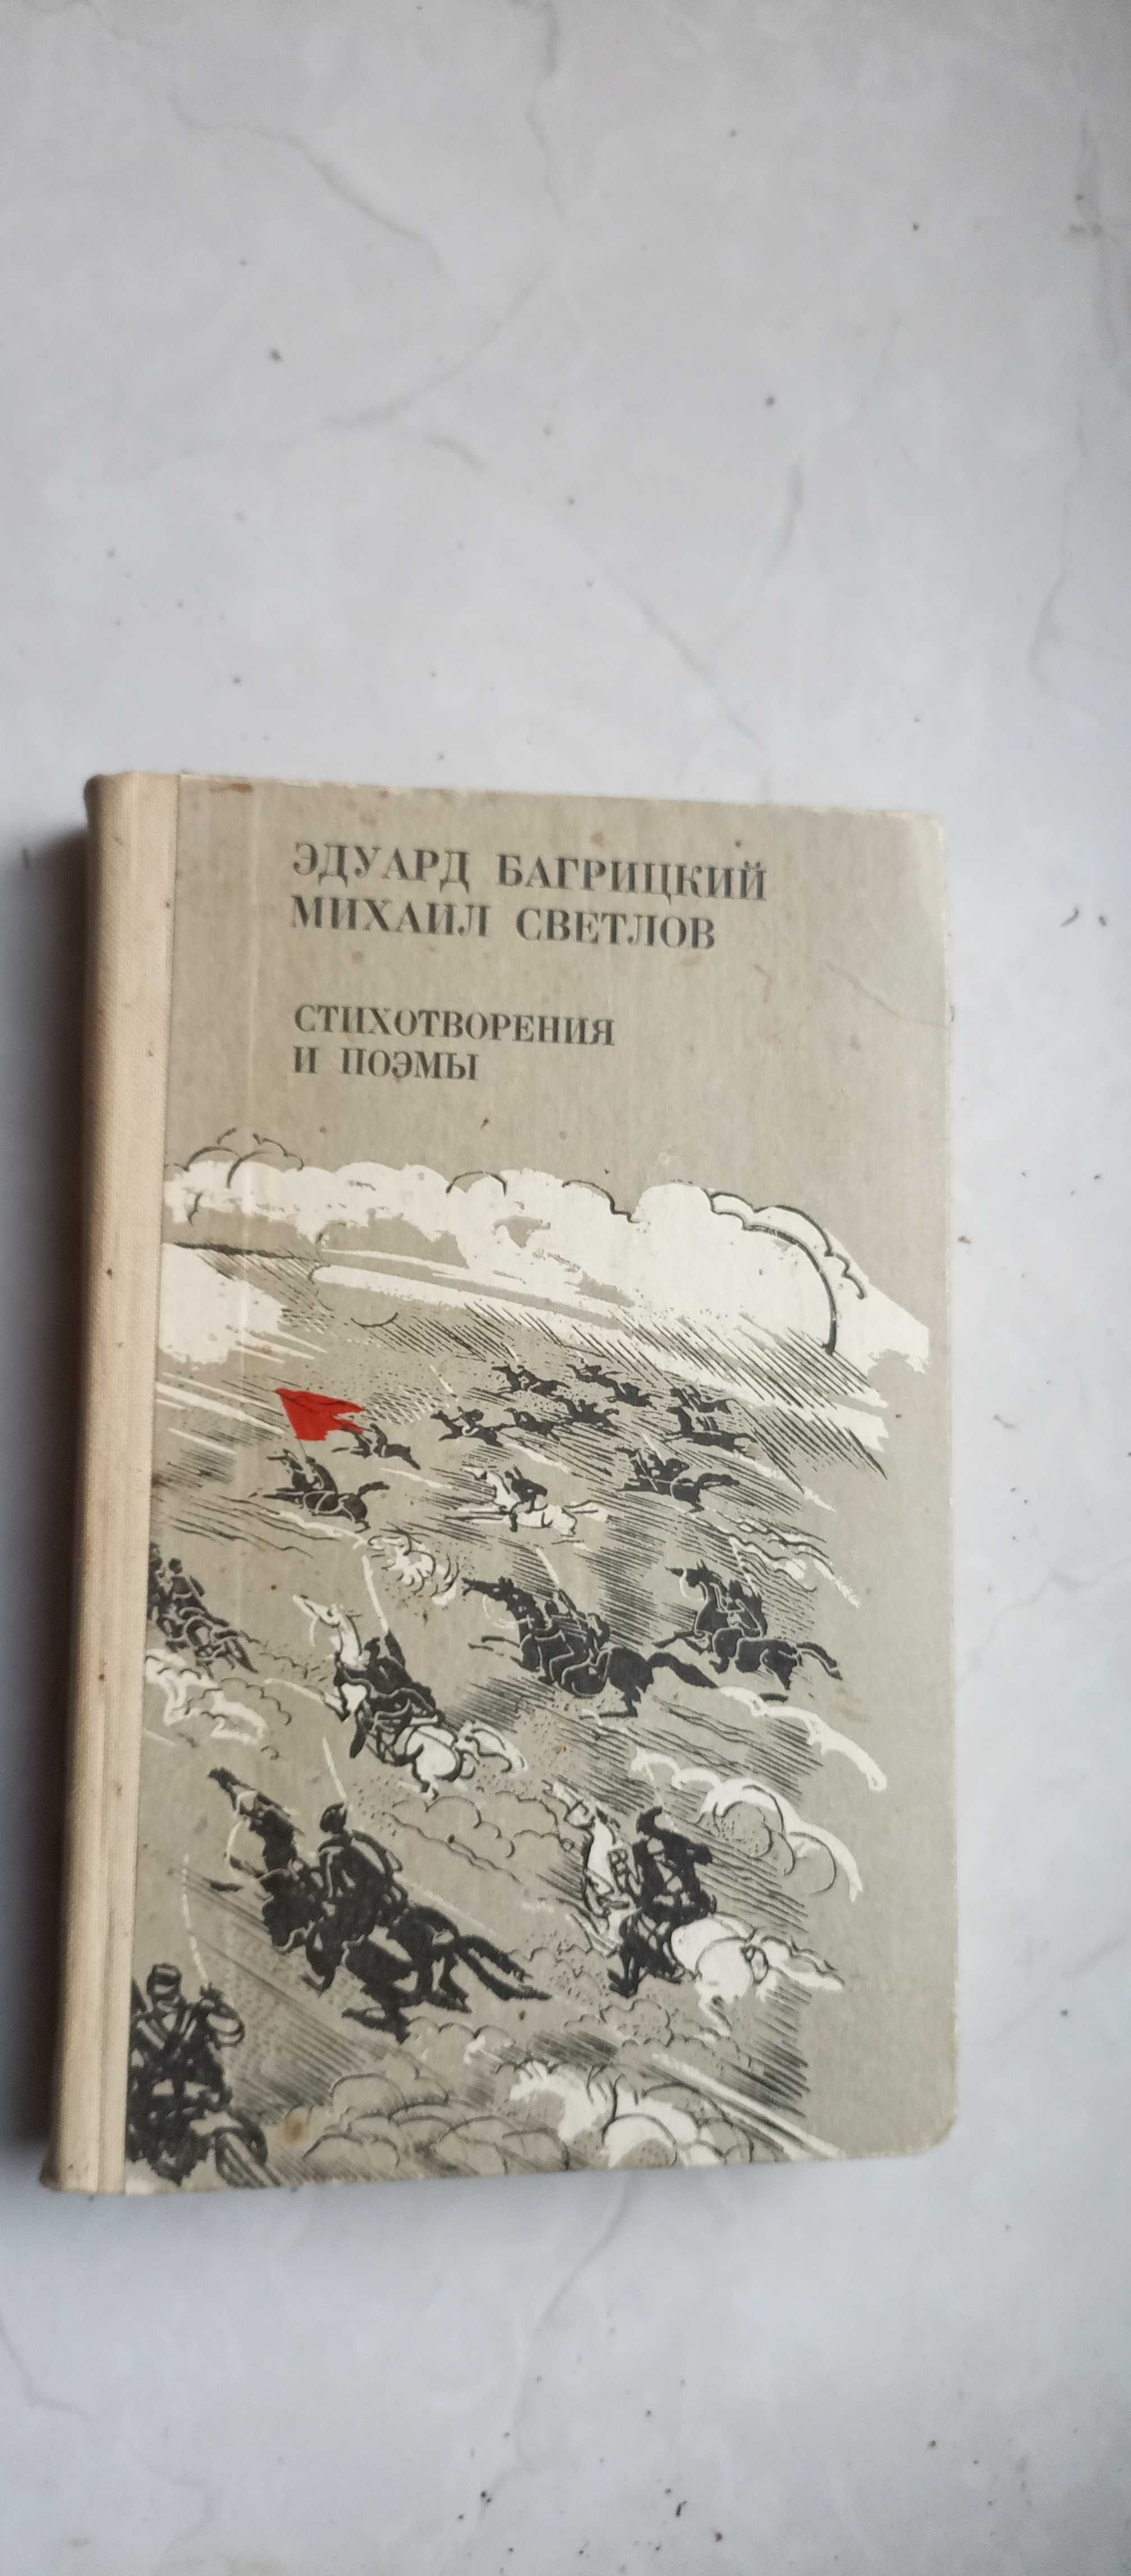 Эдуард Багрицкий, Михаил Светлов. Стихотворения, поэмы